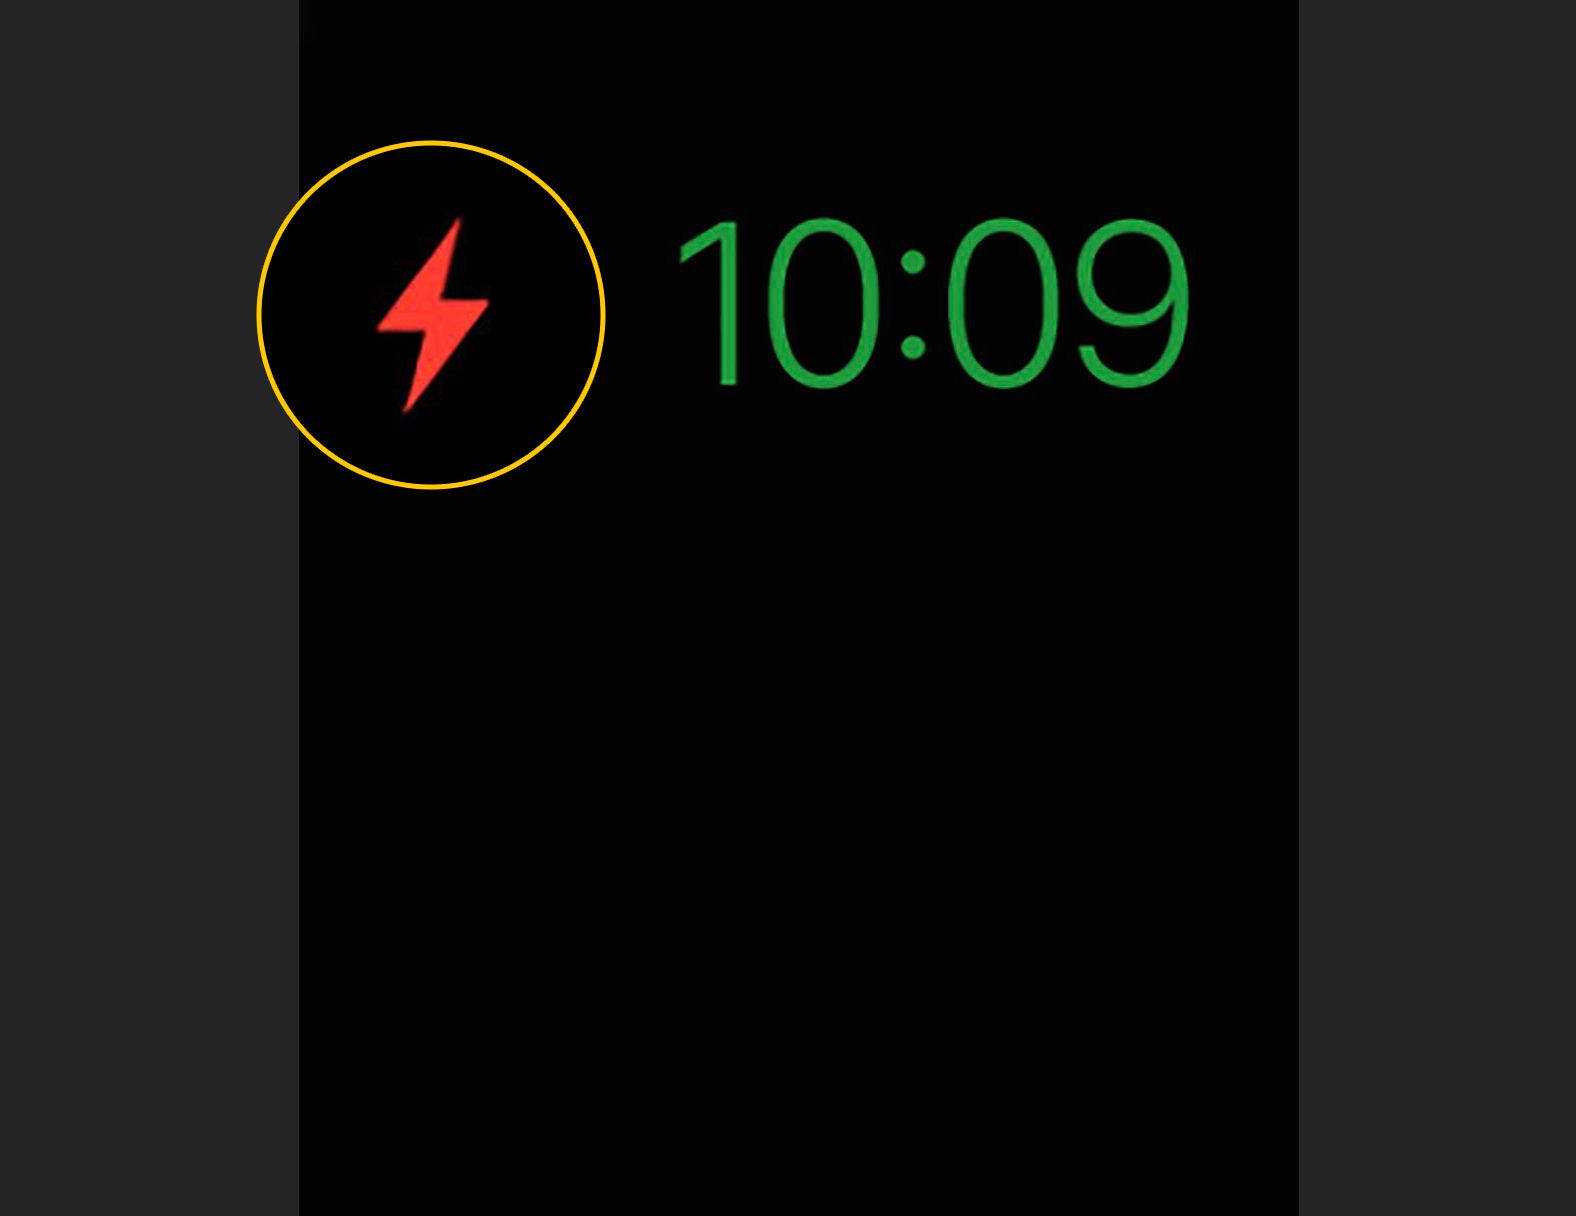 Relâmpago vermelho de reserva de energia em negrito no Apple Watch